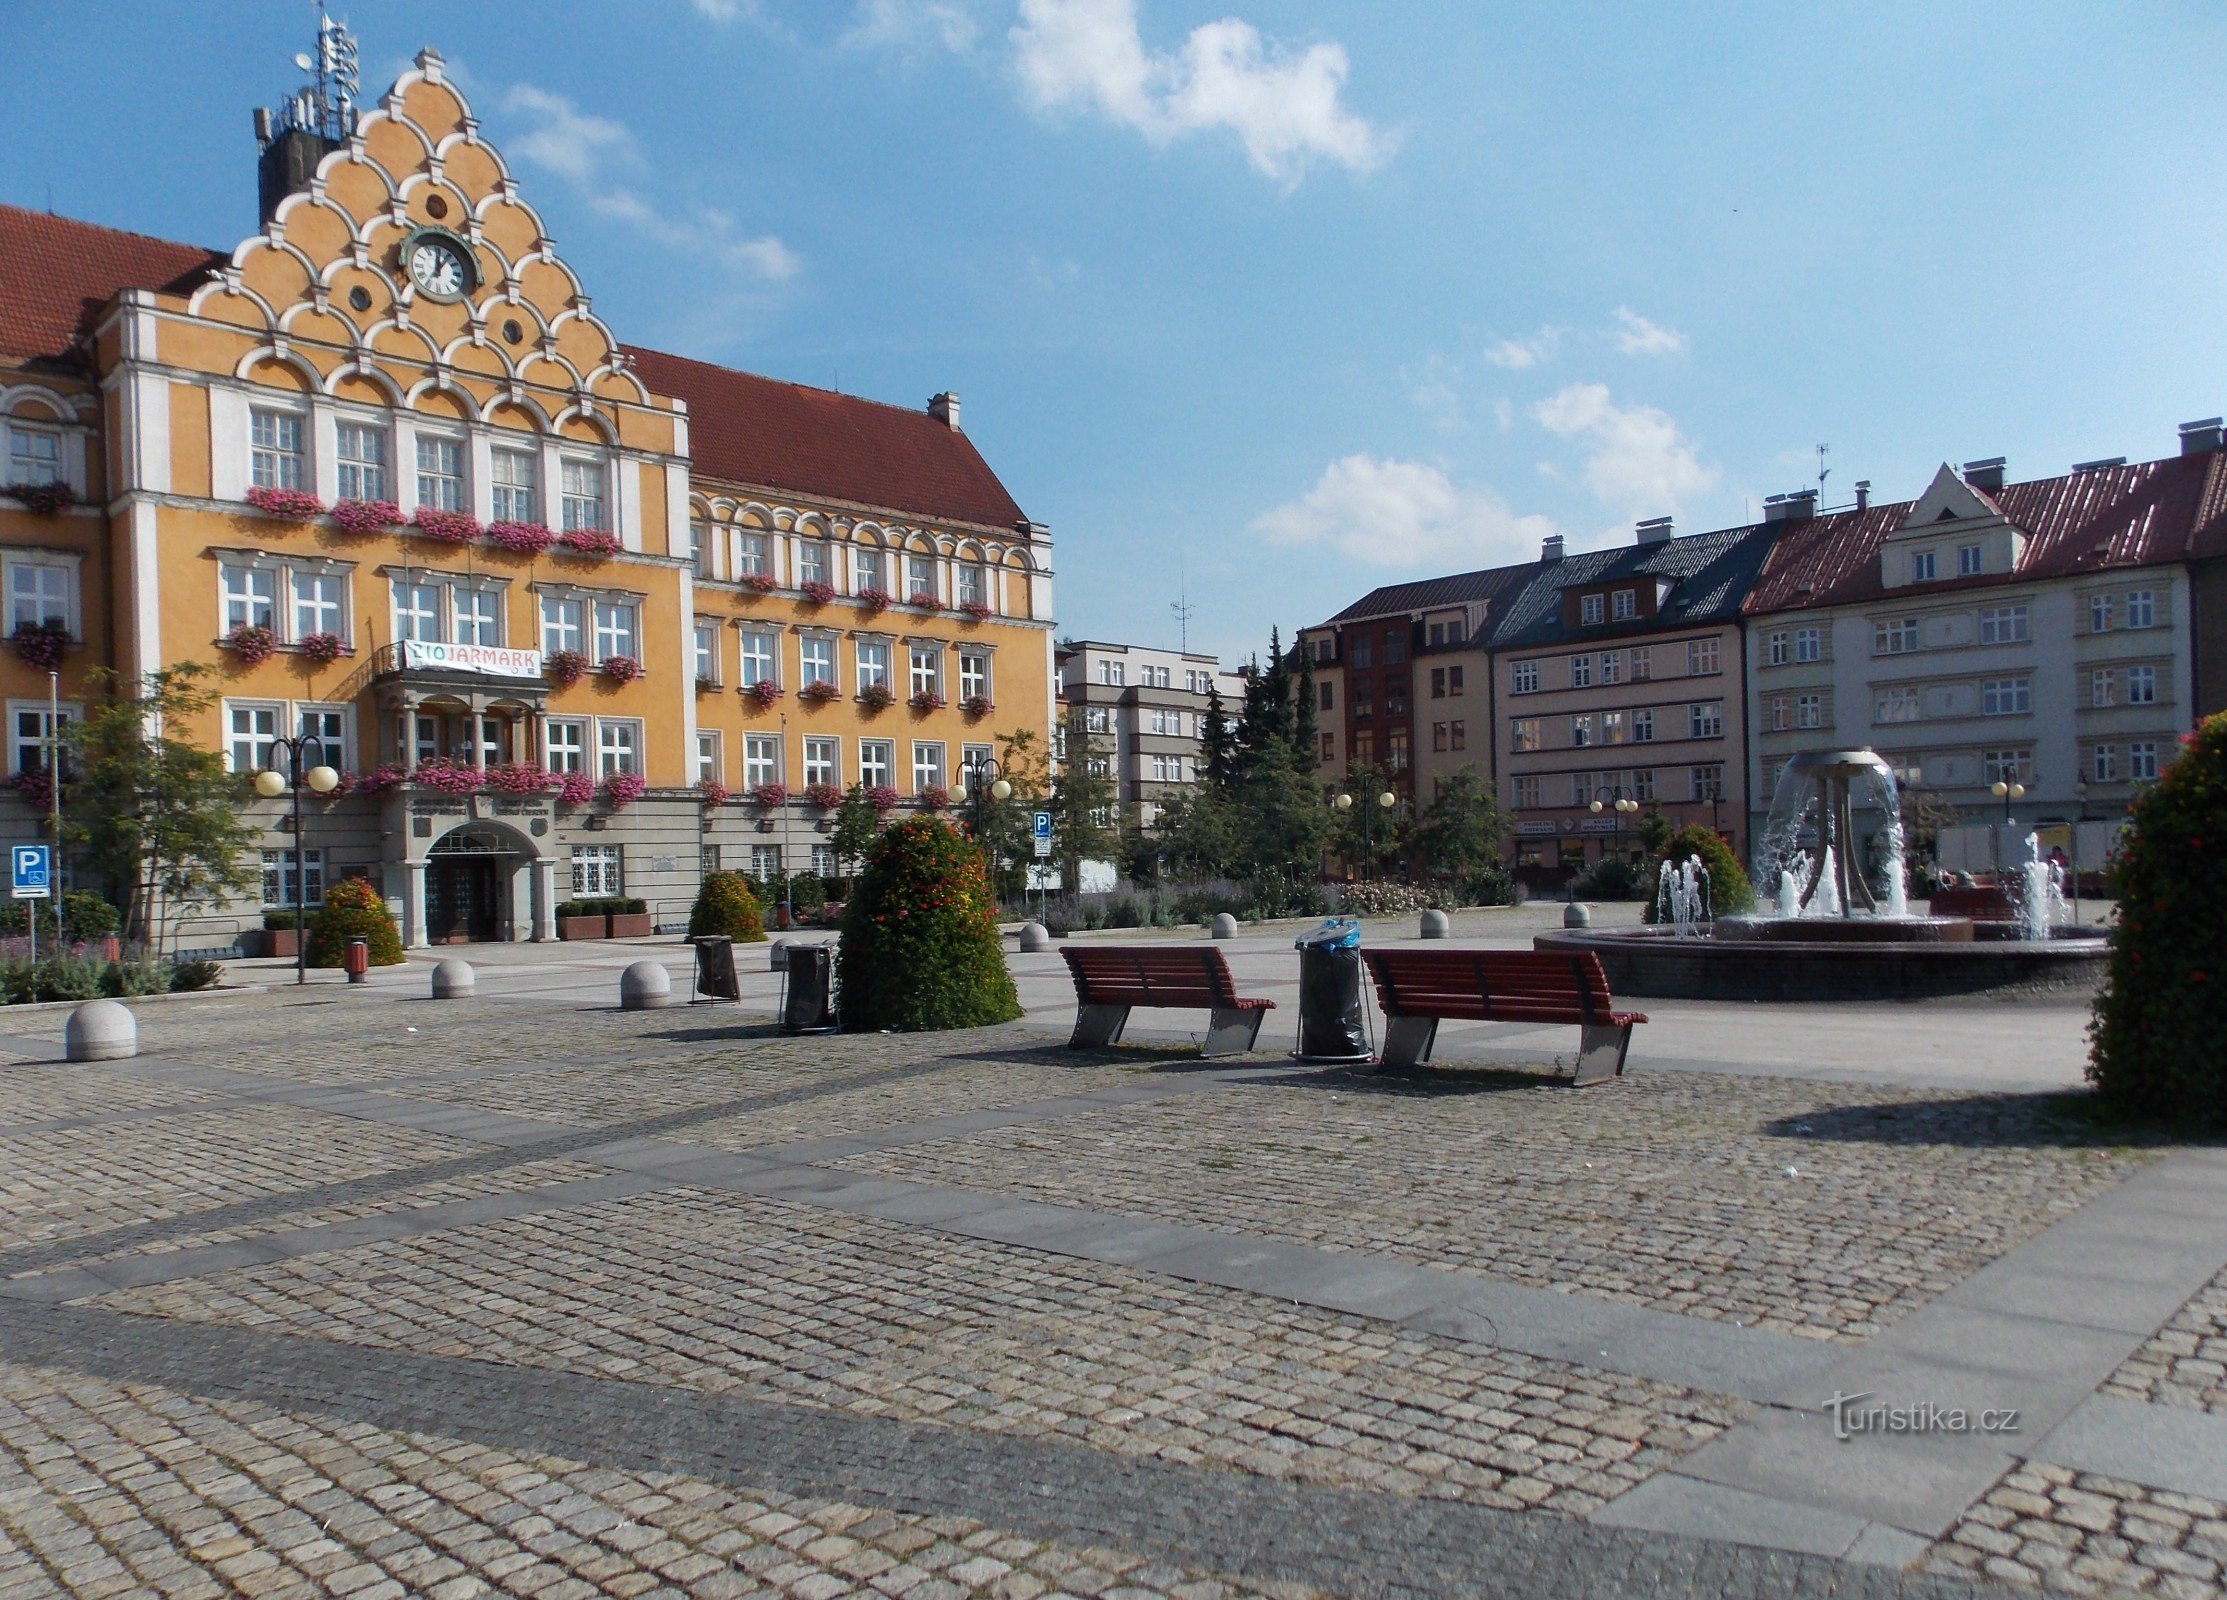 La caratteristica dominante della piazza Těšín è l'edificio del municipio